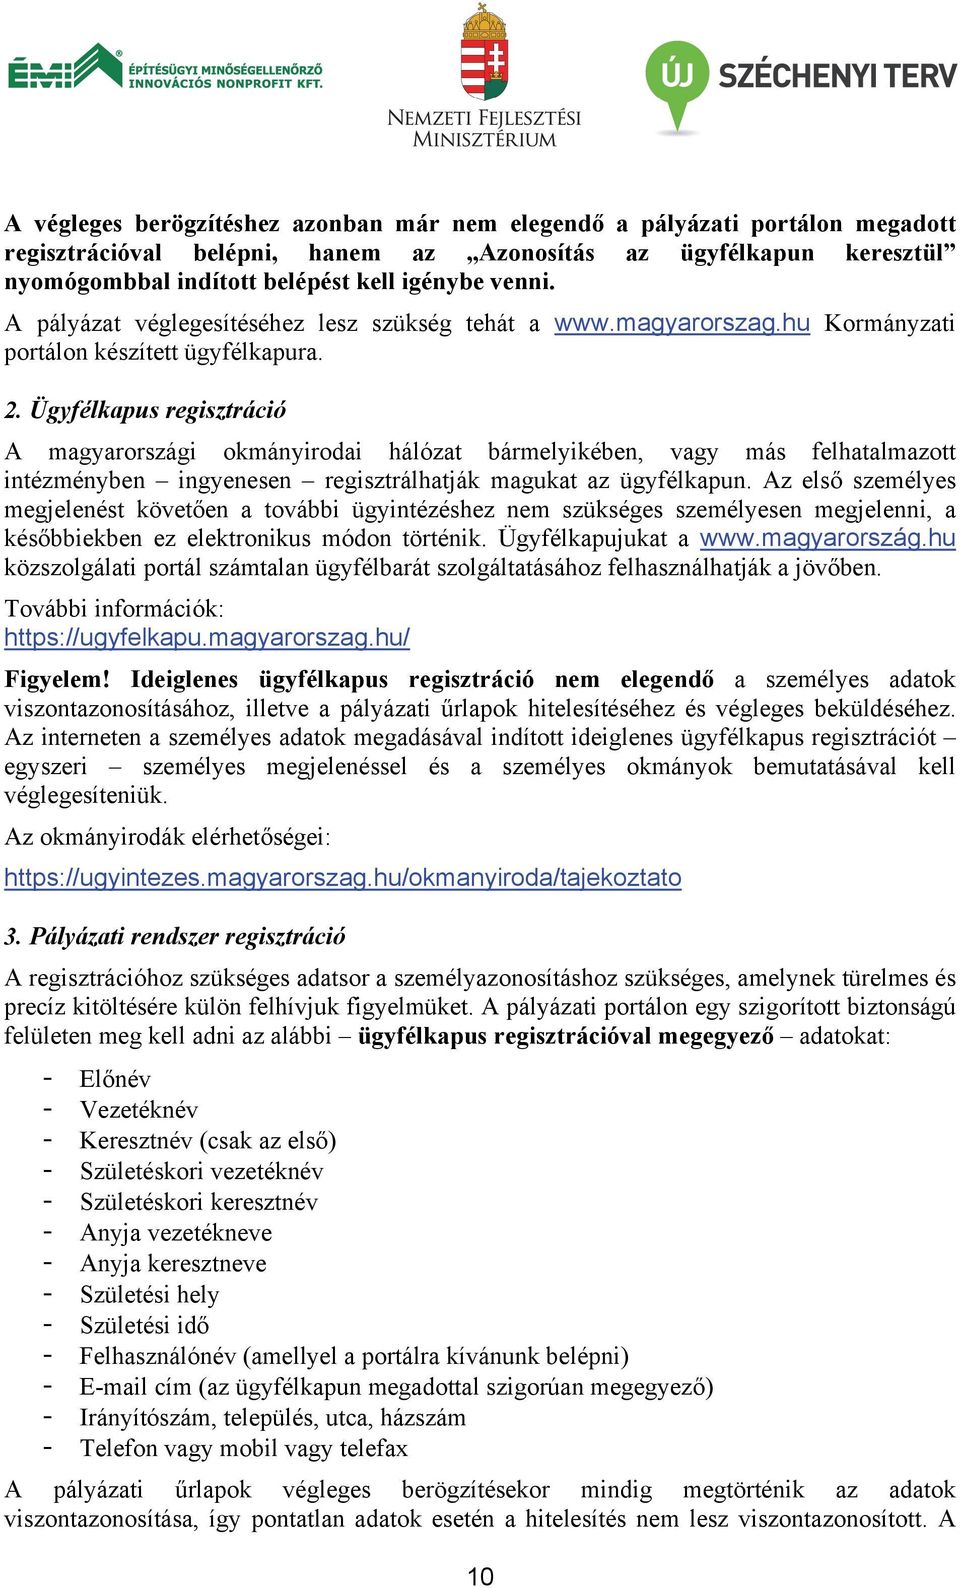 Ügyfélkapus regisztráció A magyarországi okmányirodai hálózat bármelyikében, vagy más felhatalmazott intézményben ingyenesen regisztrálhatják magukat az ügyfélkapun.